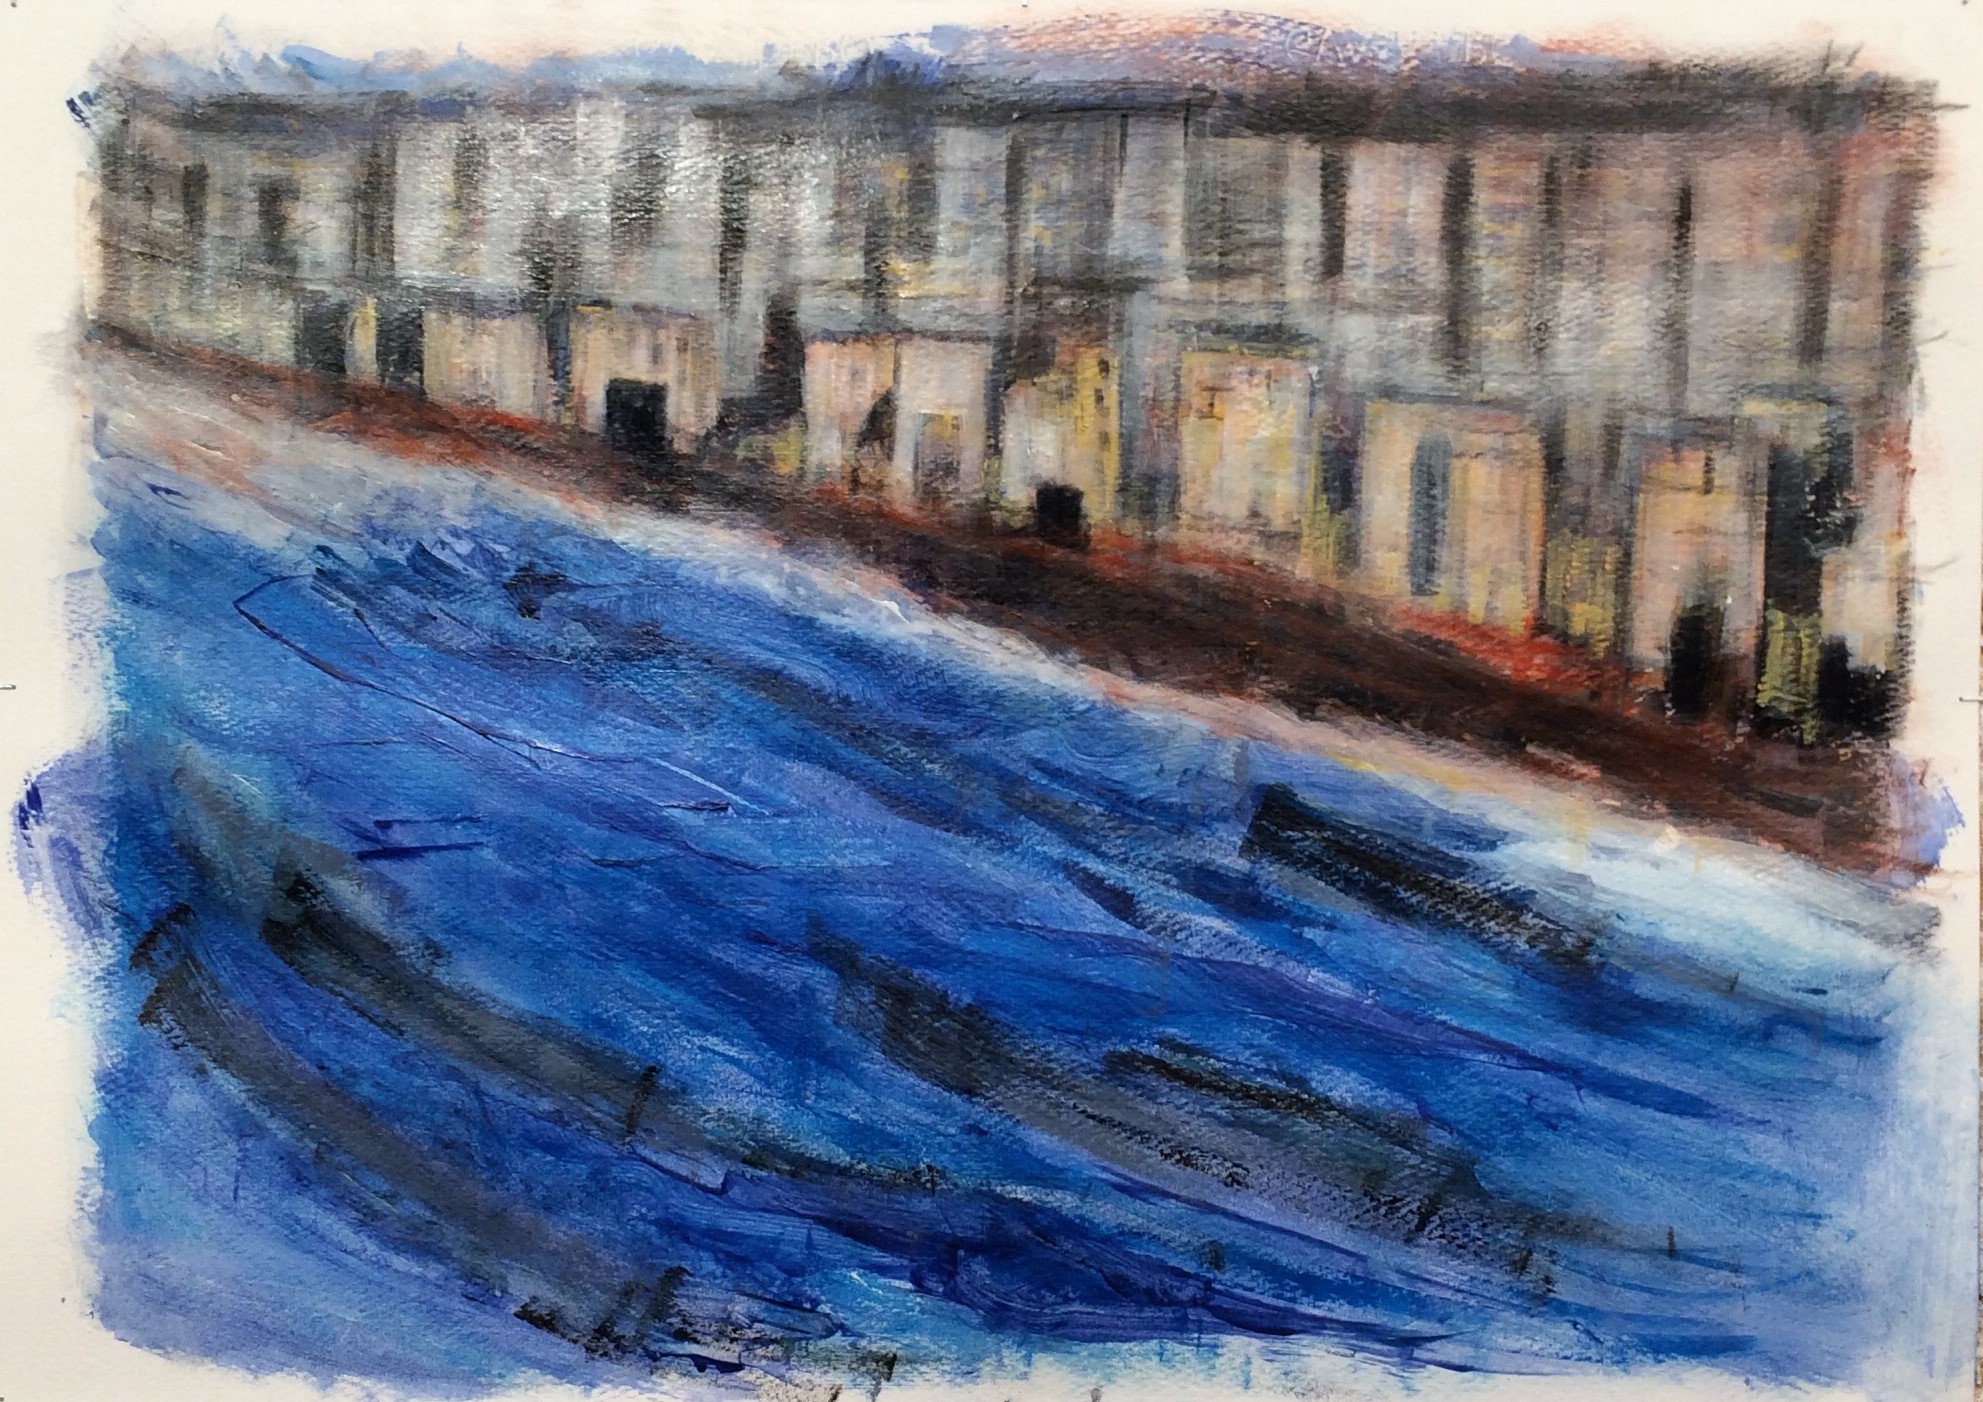 N° 2239 - Front de mer - Acrylique sur papier - 50 x 70 cm - 30 mars 2016